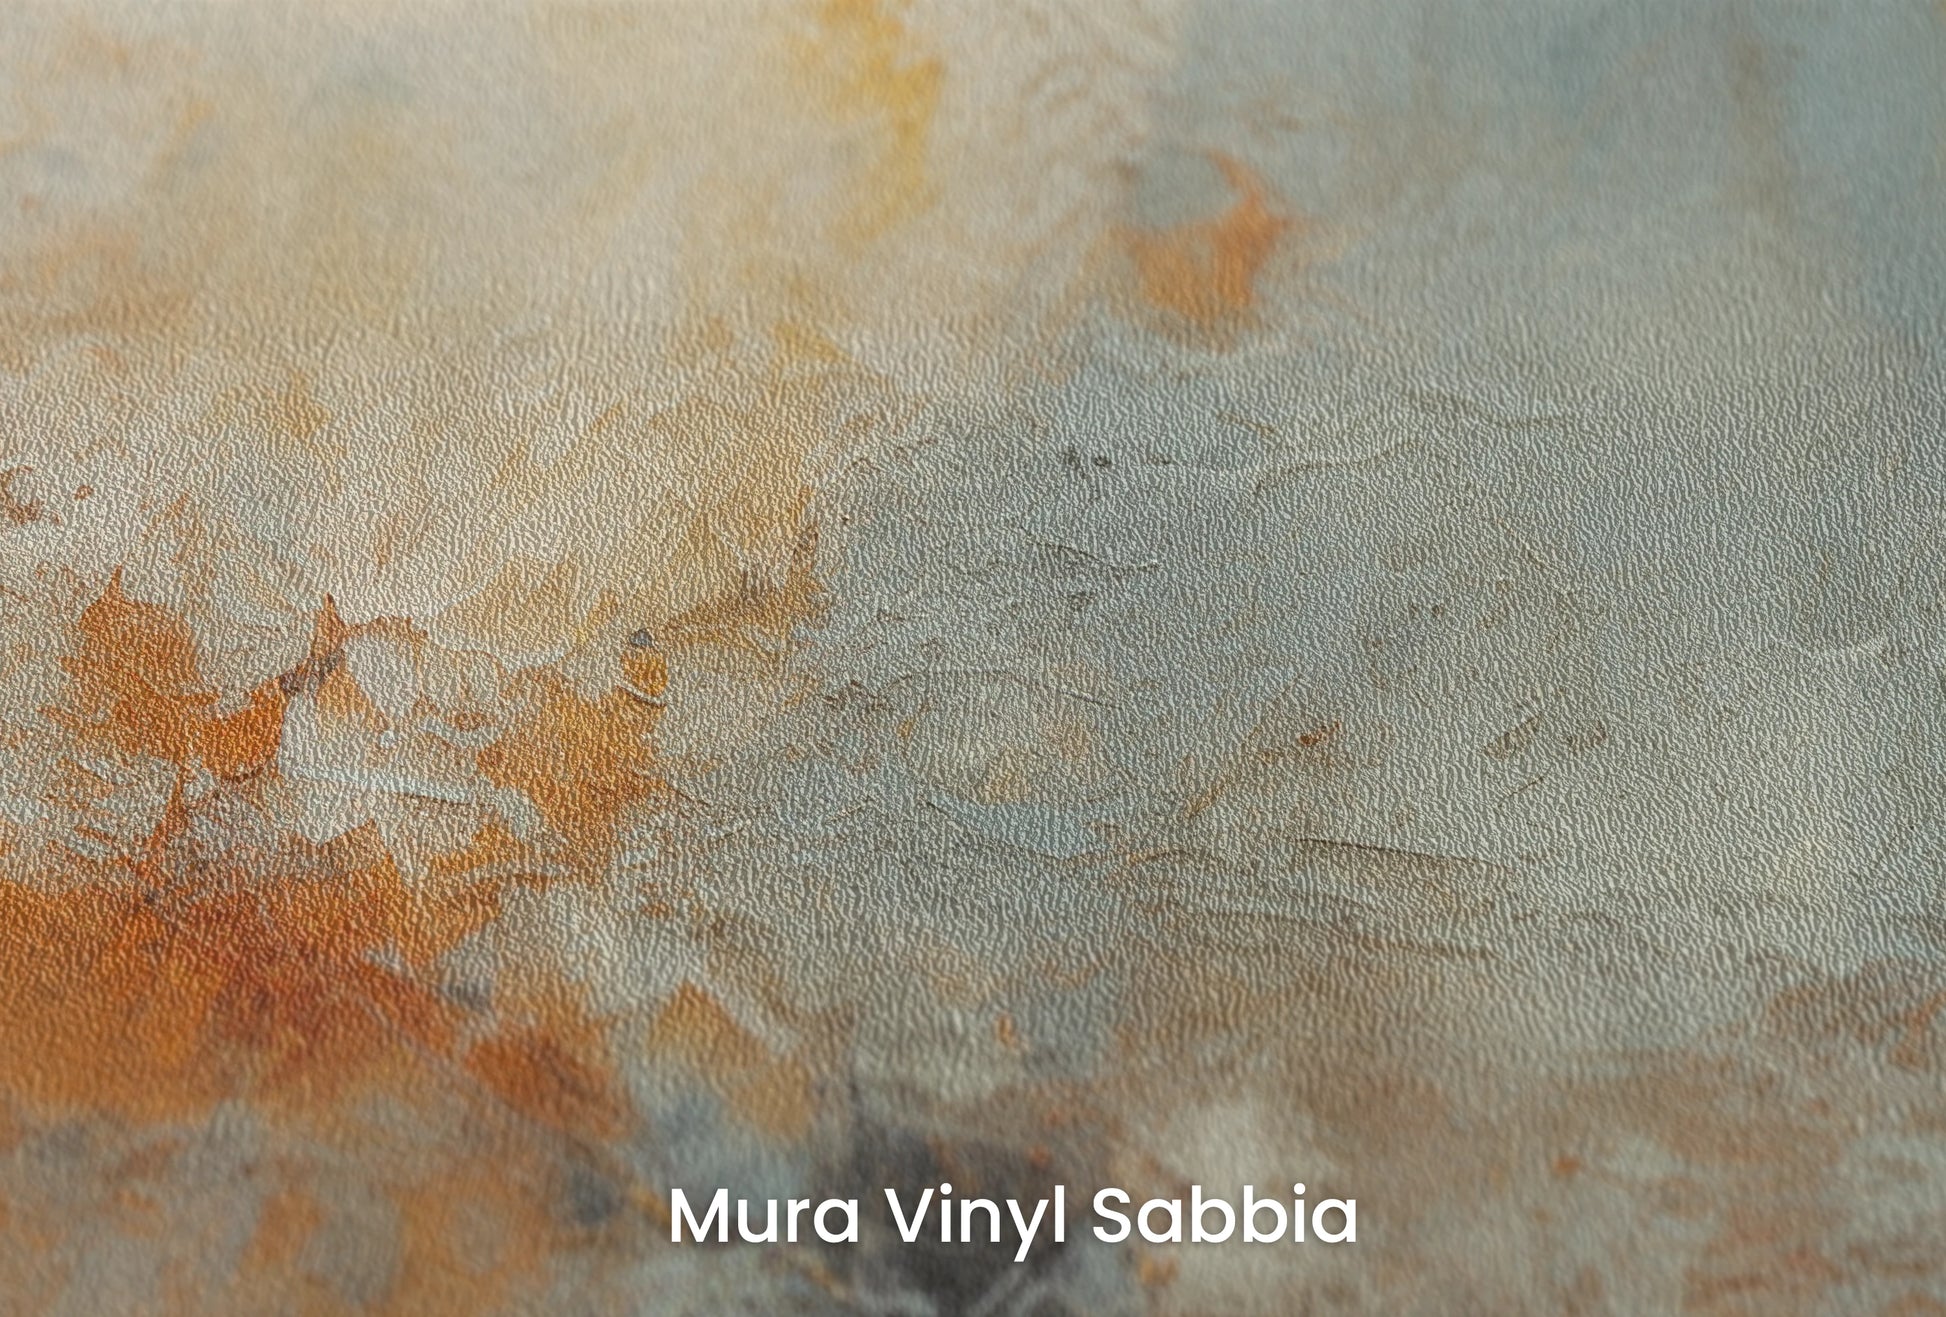 Zbliżenie na artystyczną fototapetę o nazwie Moon's Texture na podłożu Mura Vinyl Sabbia struktura grubego ziarna piasku.